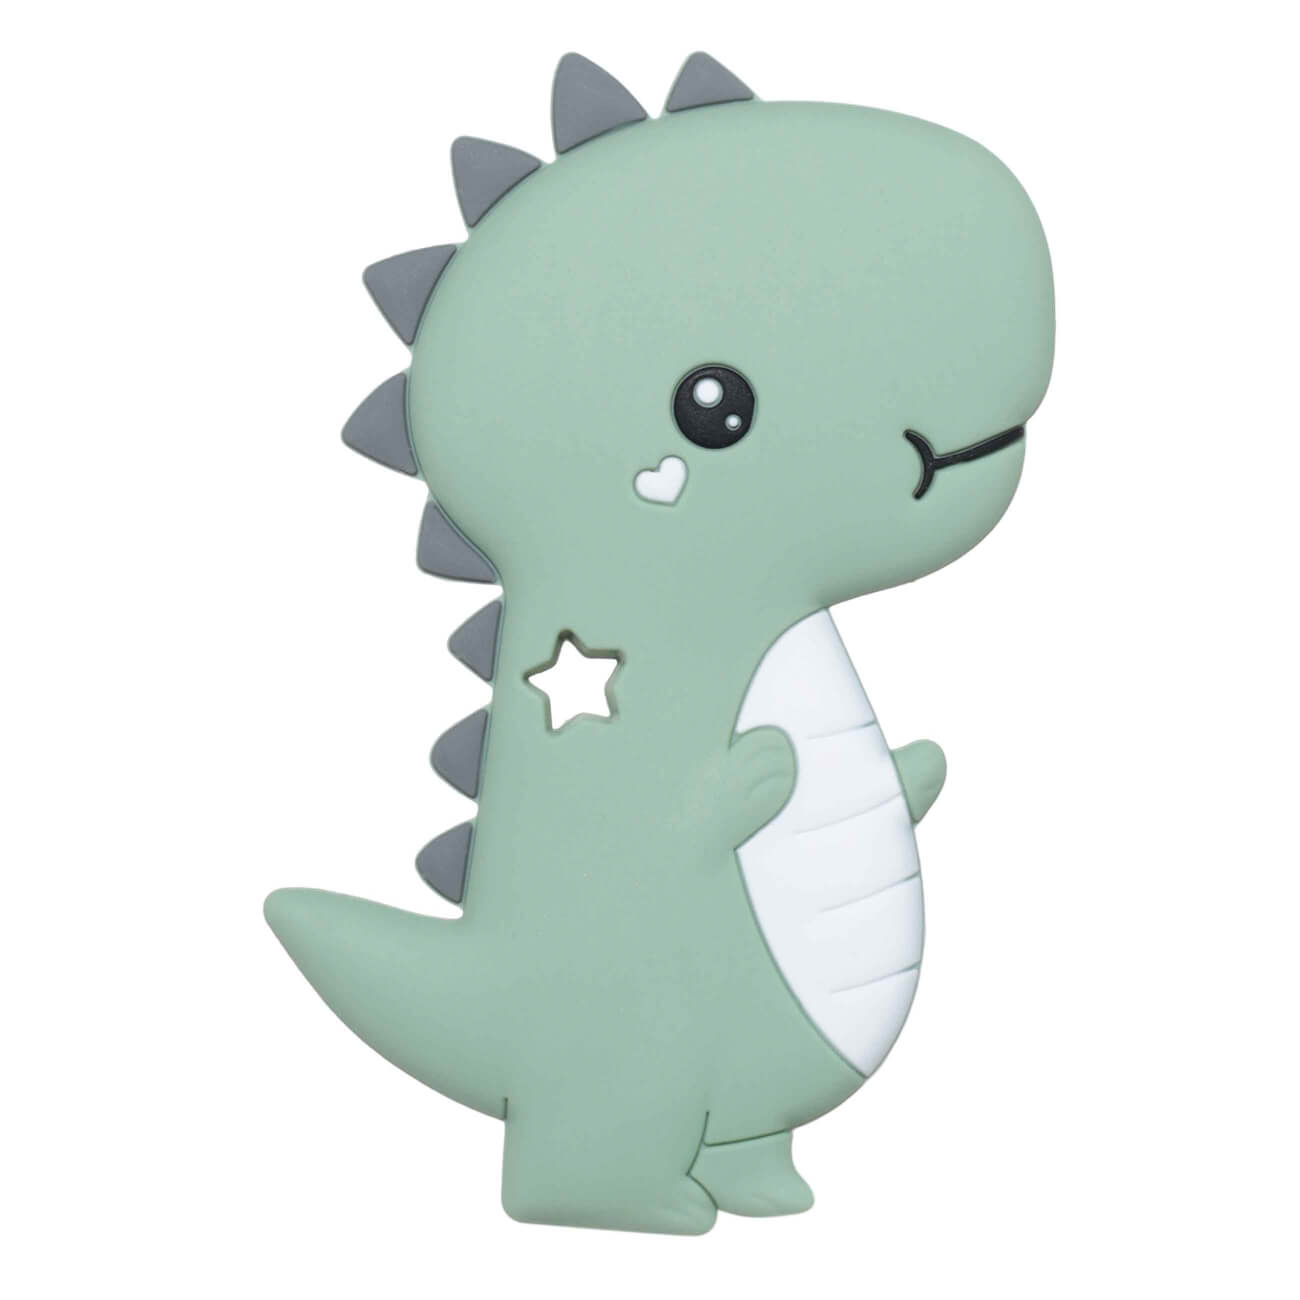 Игрушка-прорезыватель, 10 см, силикон, зеленый, Дракоша, Kiddy dragon игрушка прорезыватель 10 см силикон зеленый дракоша kiddy dragon